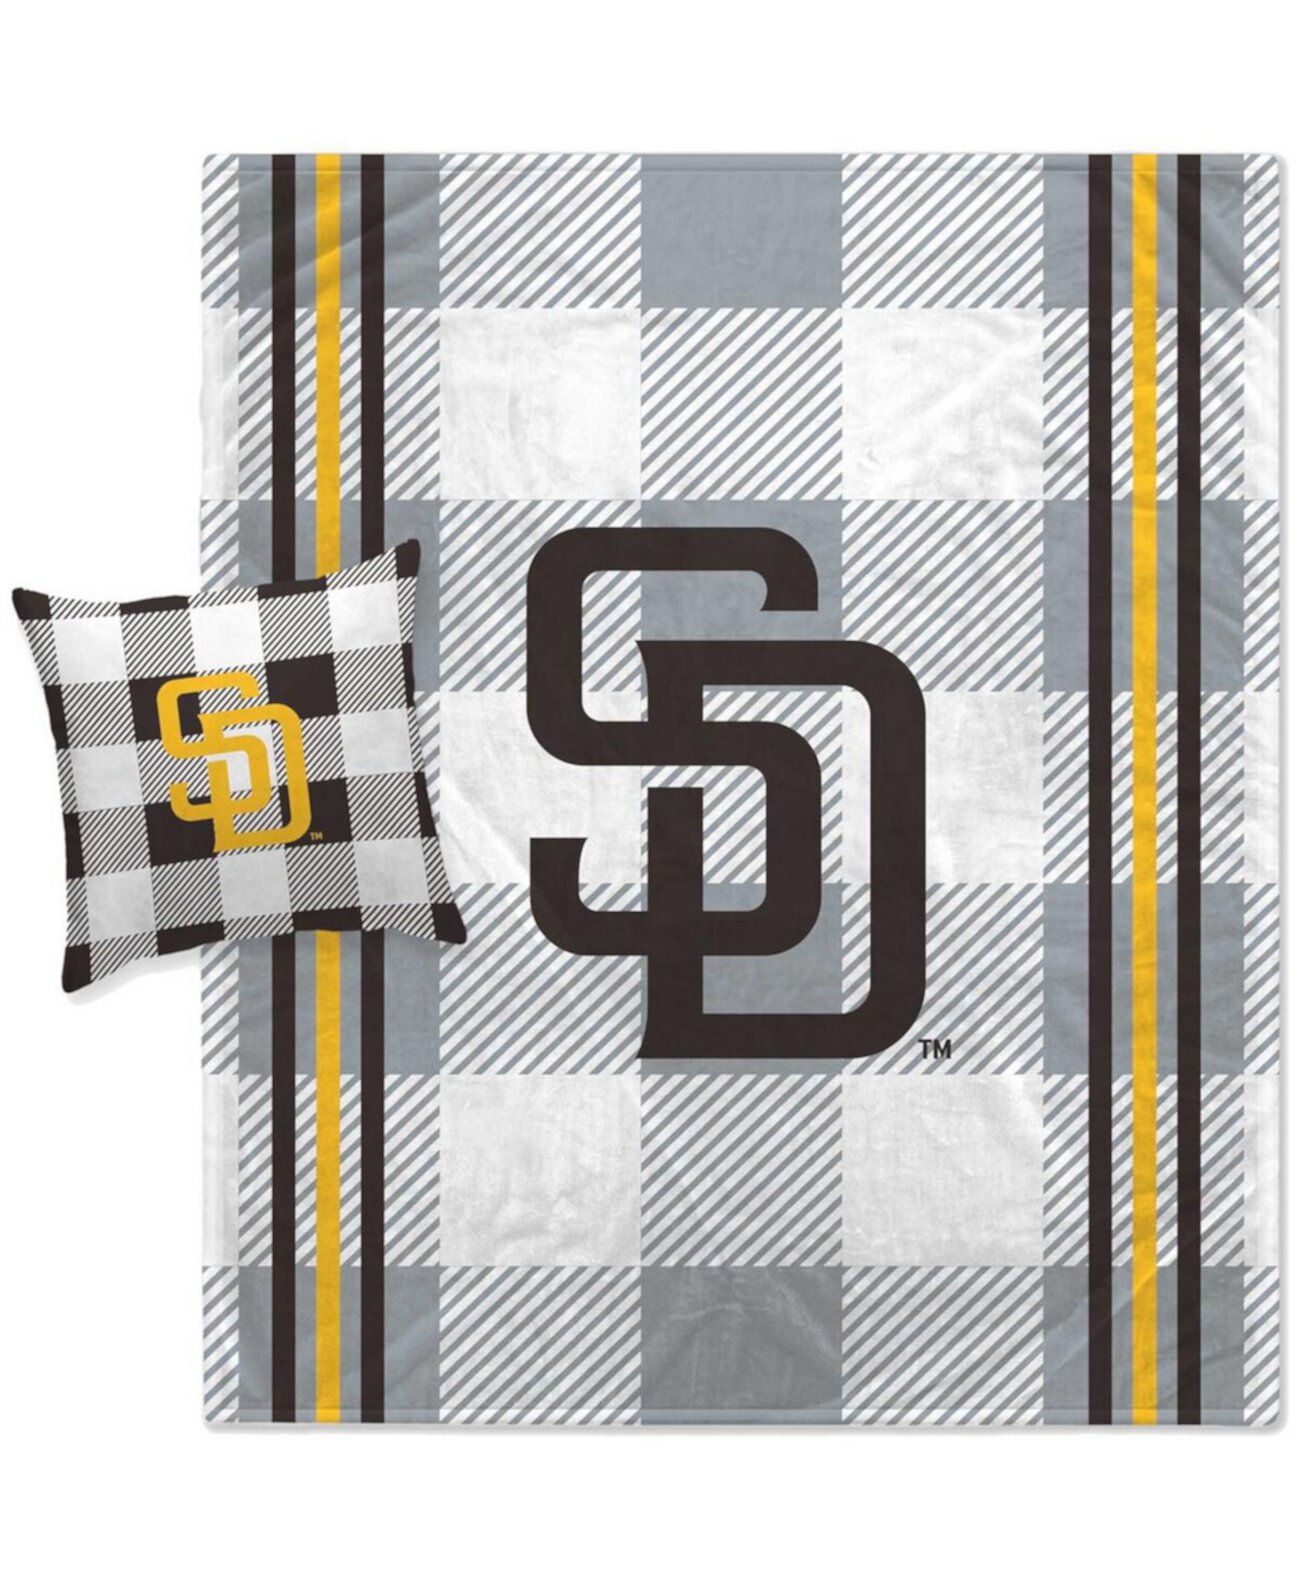 Комбинированный комплект одеяла и подушек Pegasus San Diego Padres серого цвета в клетку Pegasus Home Fashions